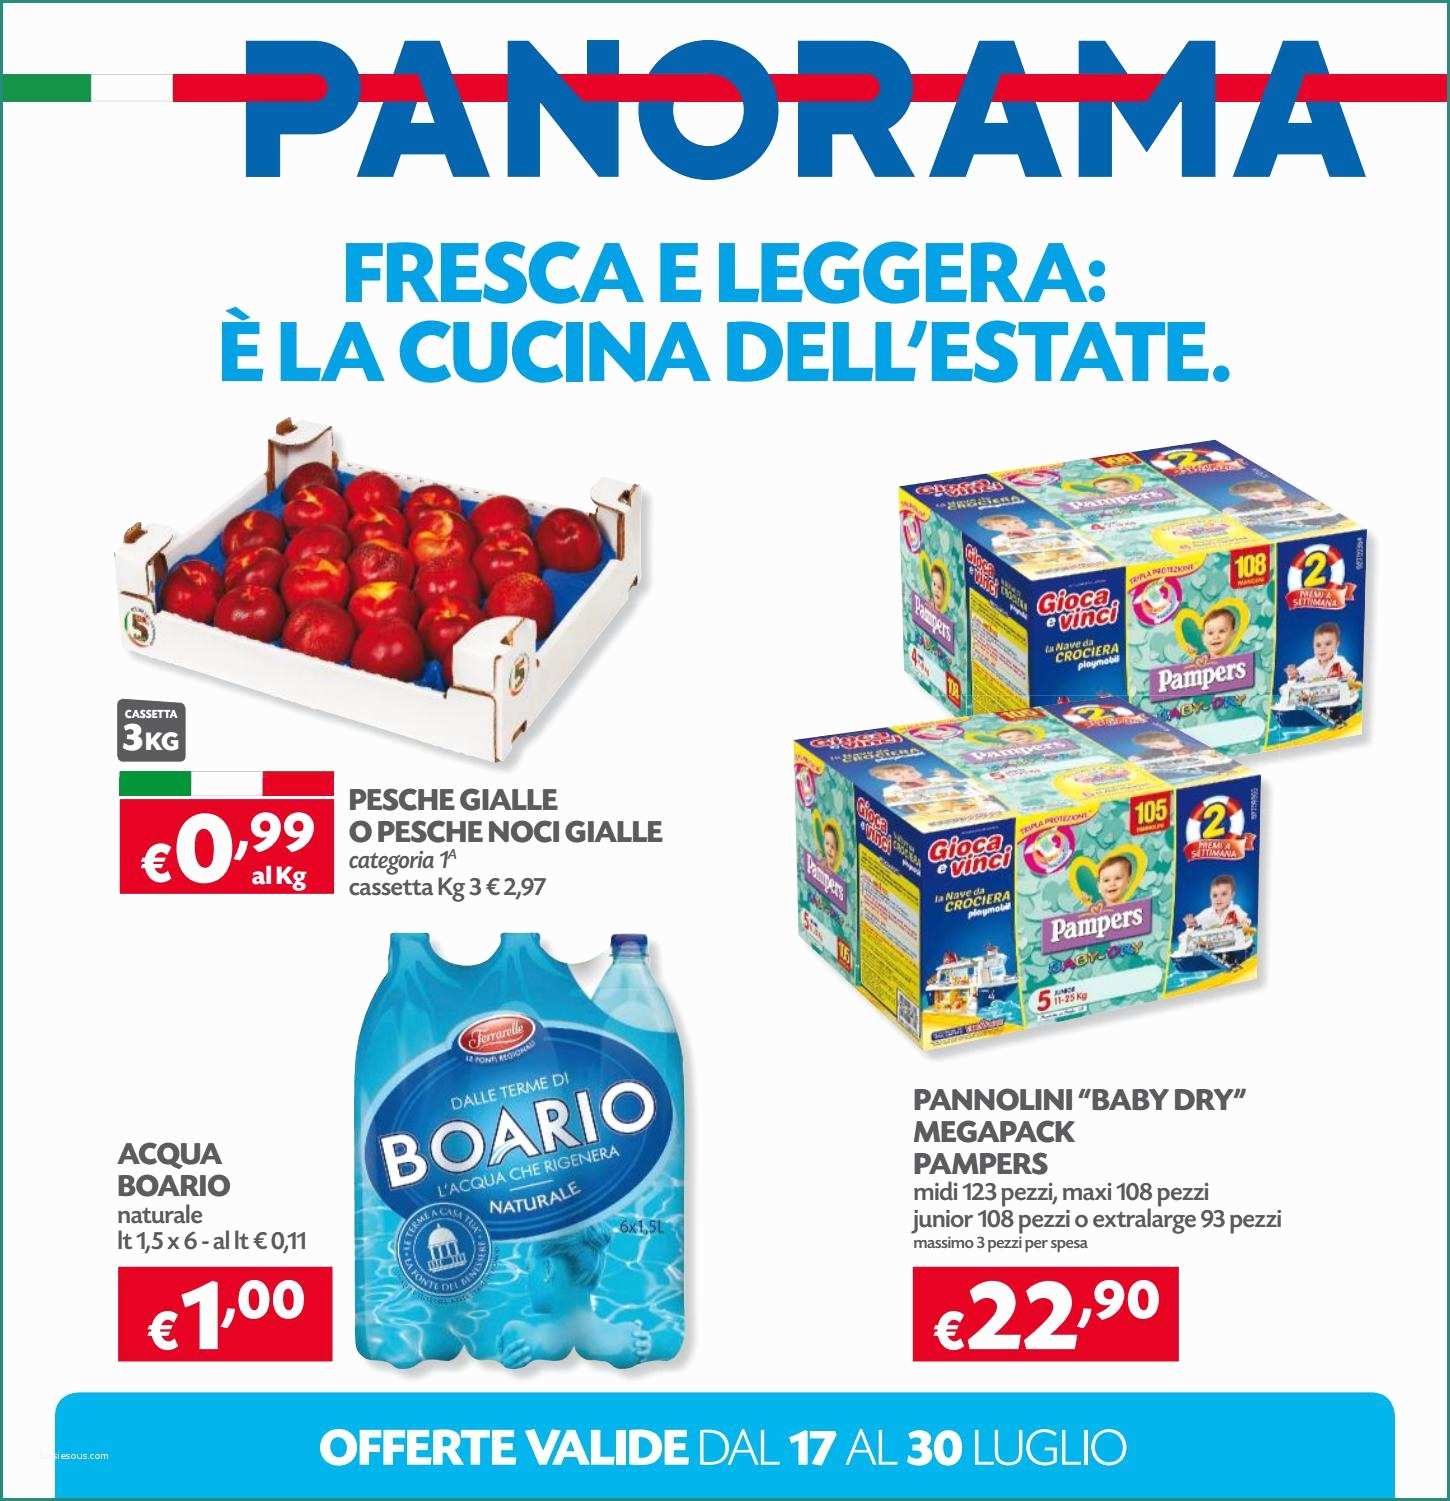 Acqua Alcalina In Bottiglia Marche E Panorama 30lug by Best Of Volantinoweb issuu